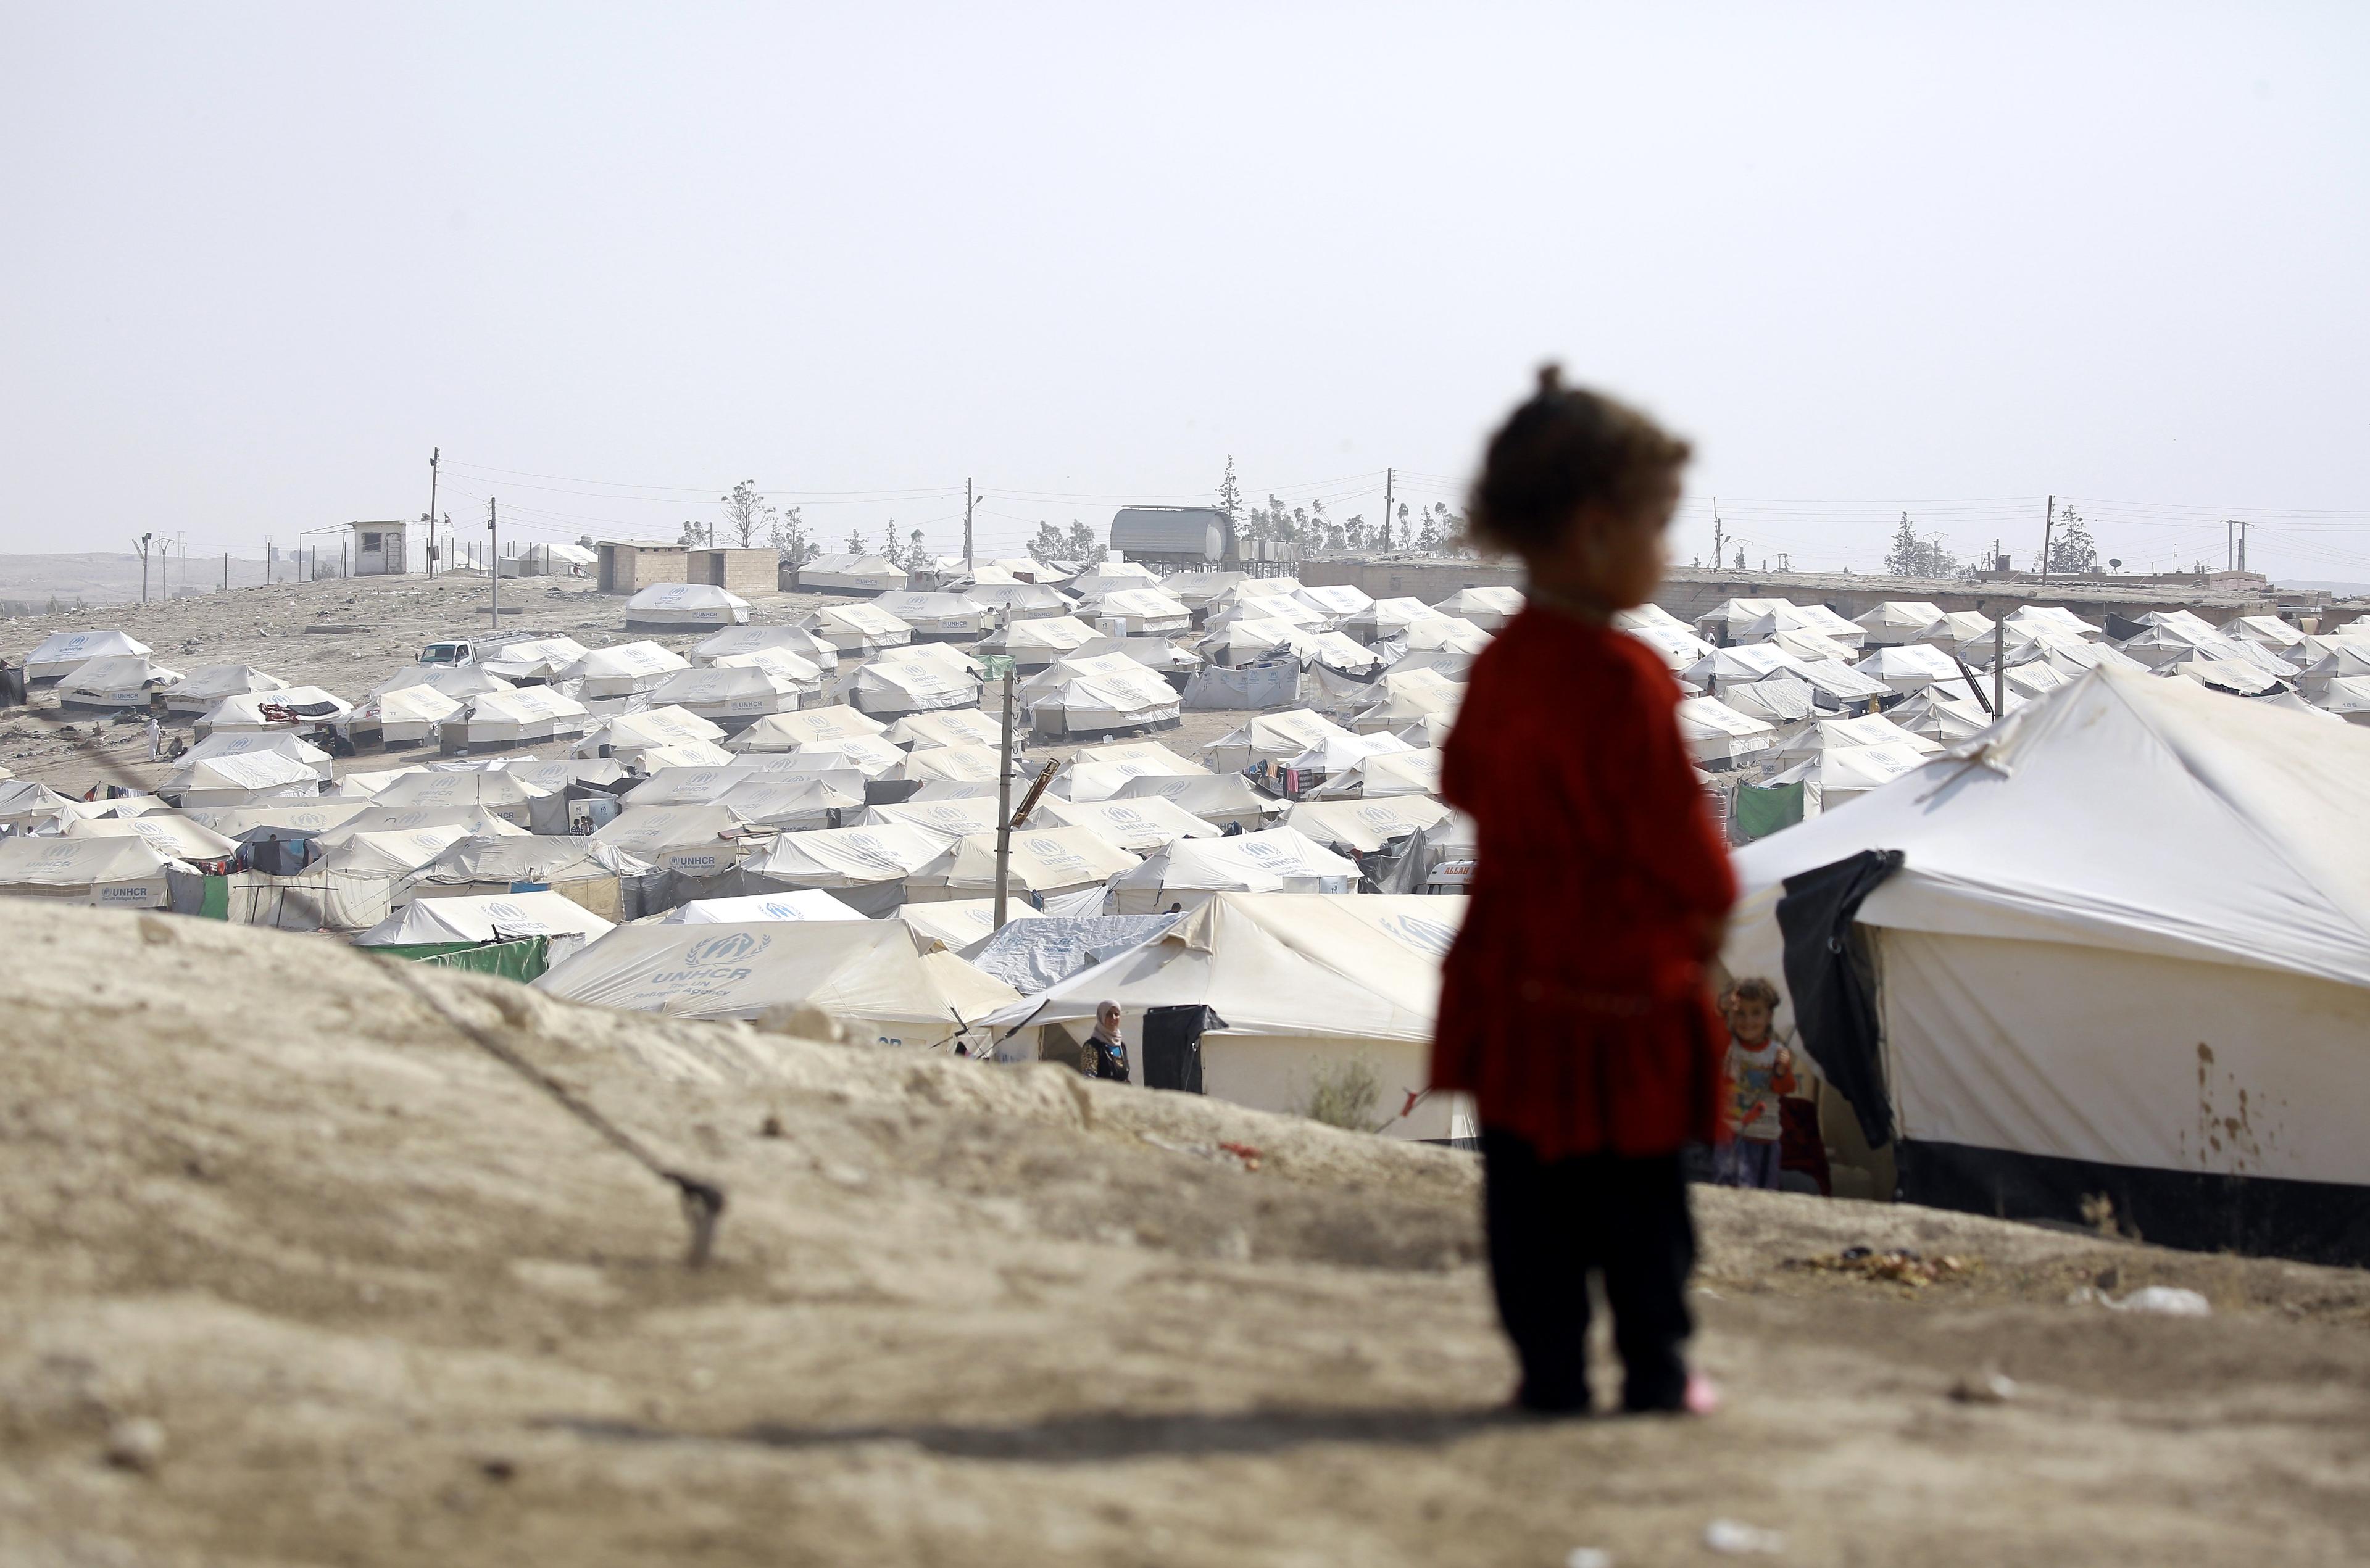 sylwetka dziecka na tle obozu z namiotami dla uchodźców